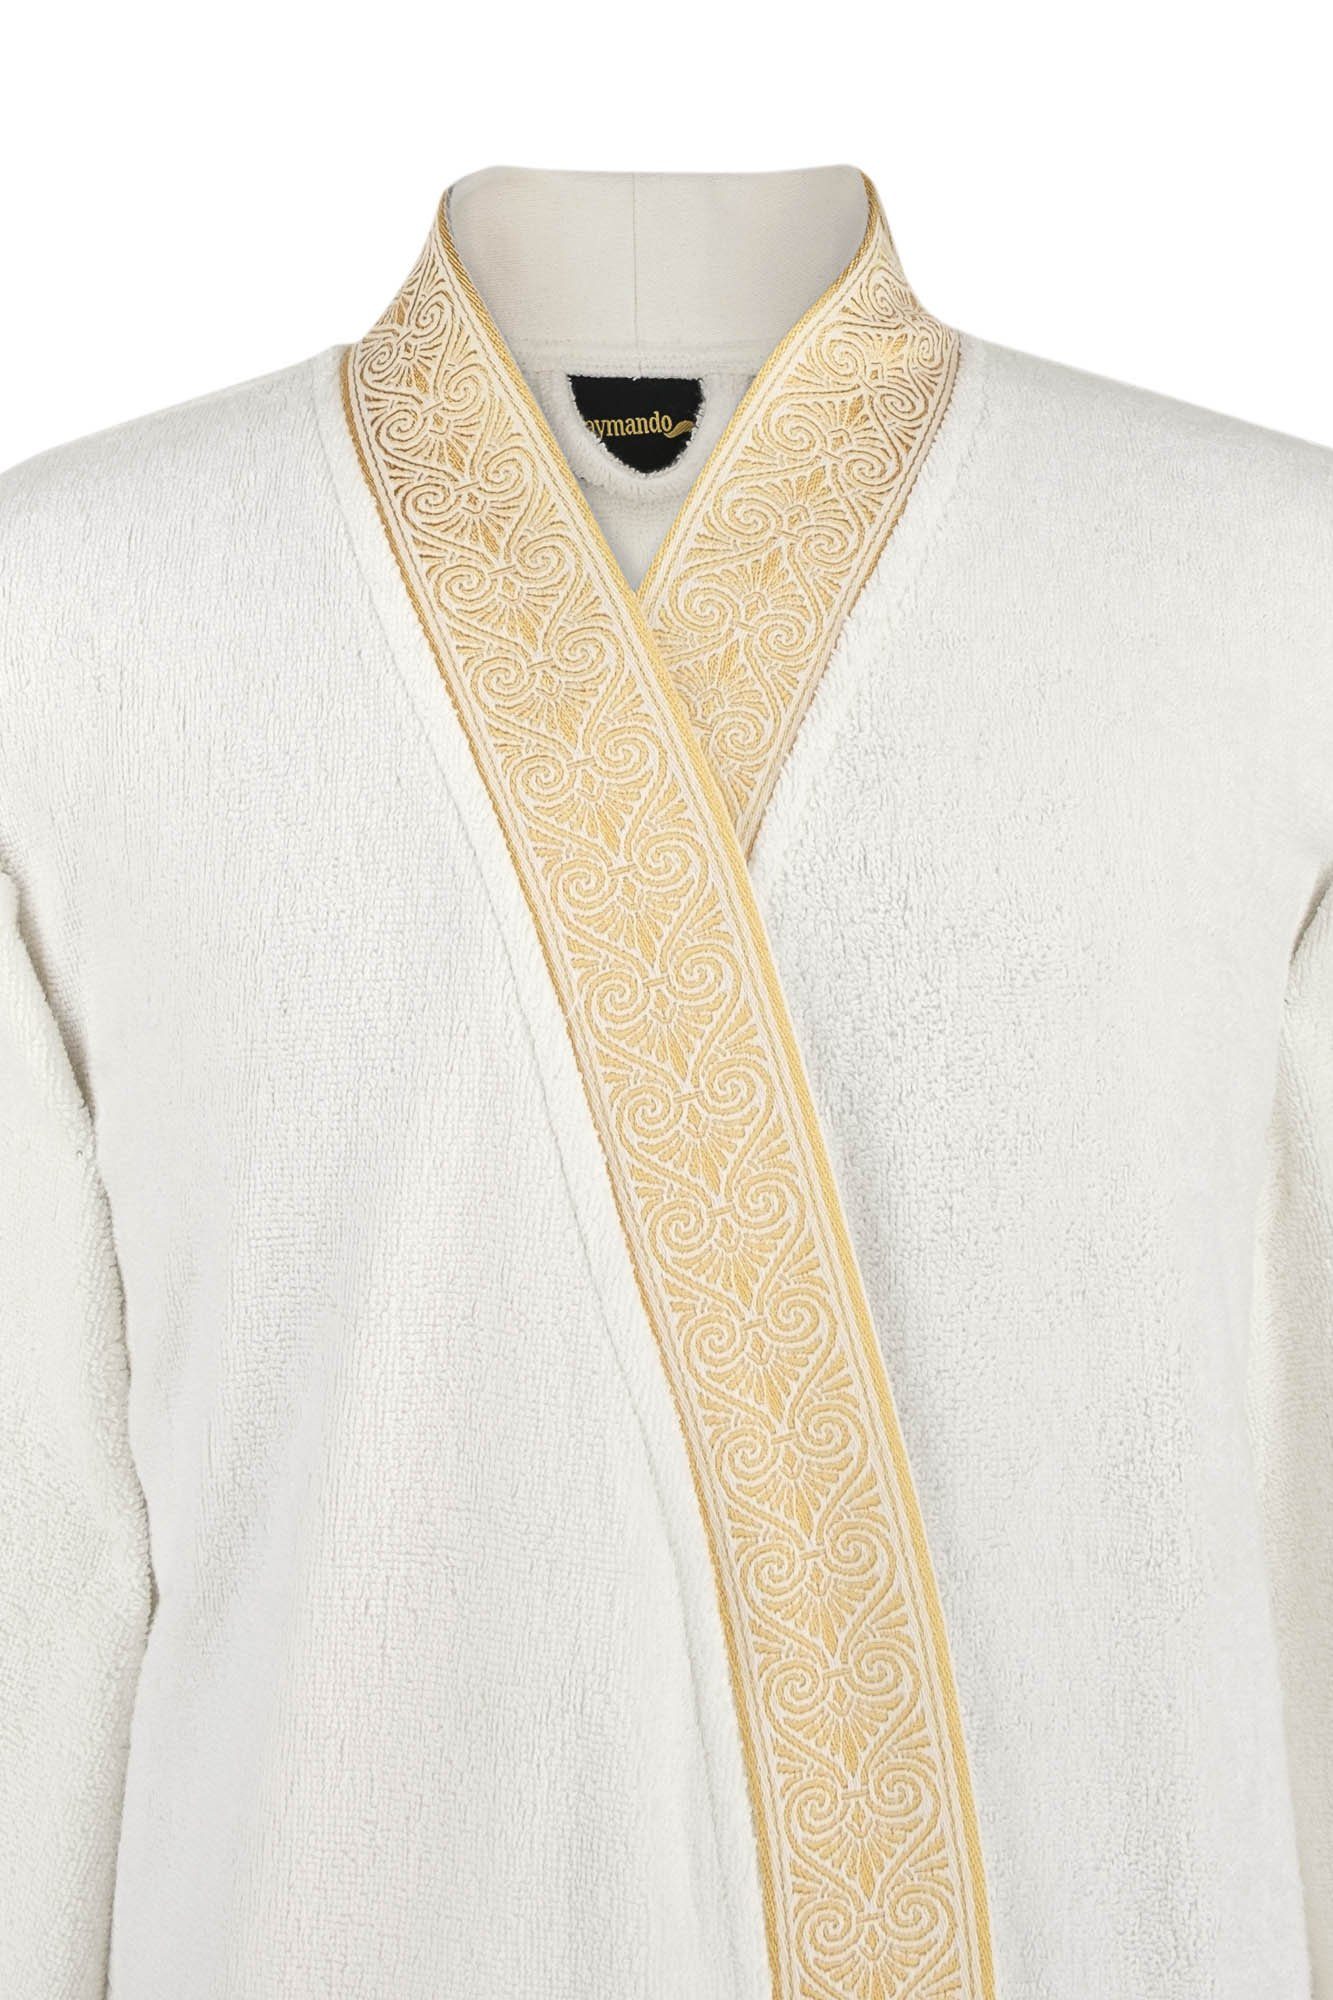 Blende S, Ornament Baumwolle, Weiß, Optik, Gold 100% Bindegürtel, Kimono-Kragen, gestickte Geschenkverpackung mit Aymando Bademantel